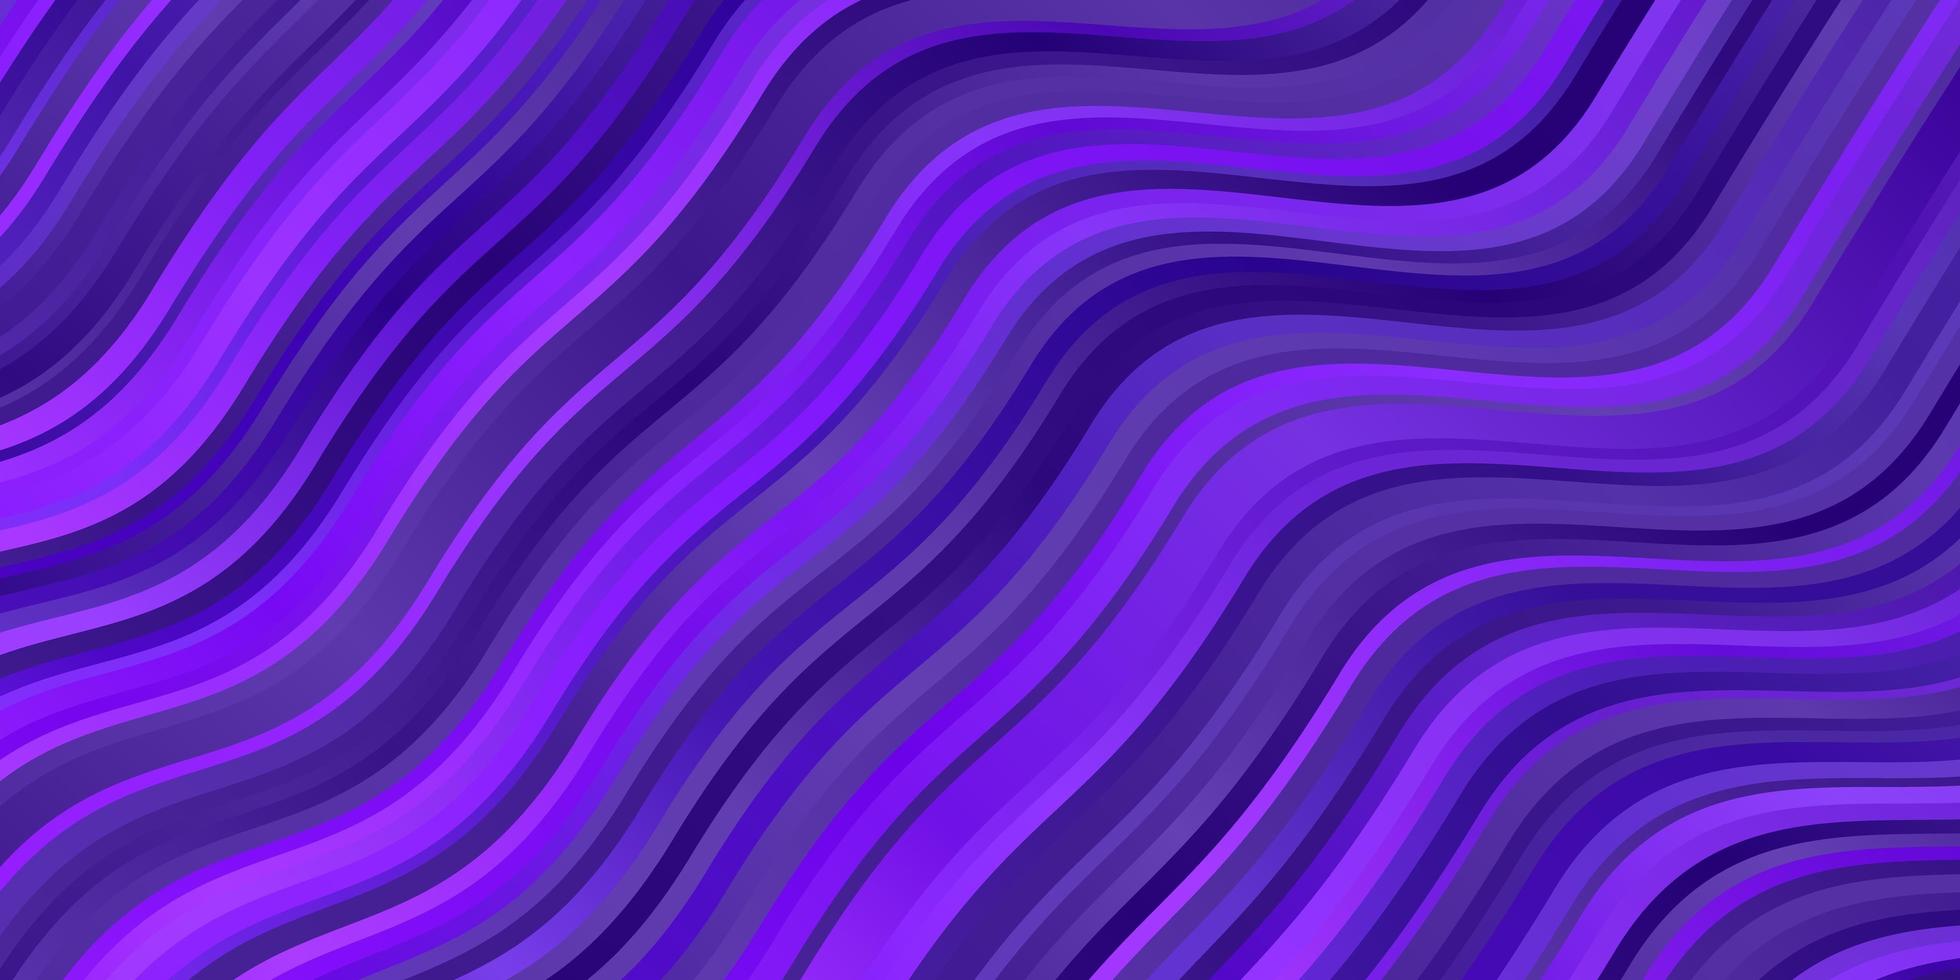 diseño vectorial de color púrpura oscuro, rosa con arco circular. vector